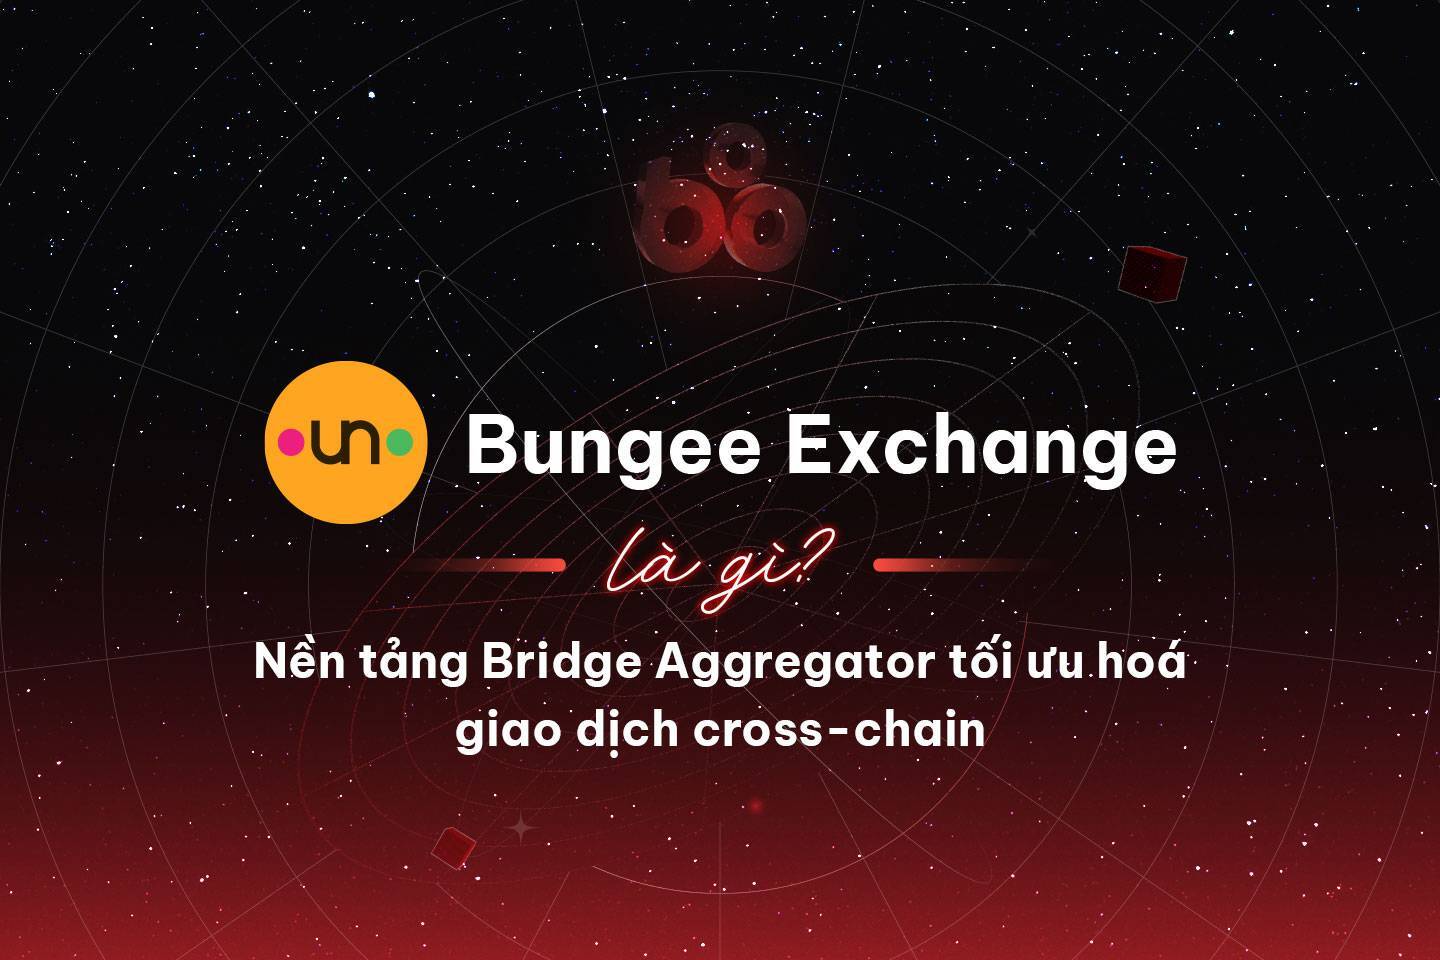 Bungee Exchange Là Gì Nền Tảng Bridge Aggregator Tối Ưu Hoá Giao Dịch Cross-chain